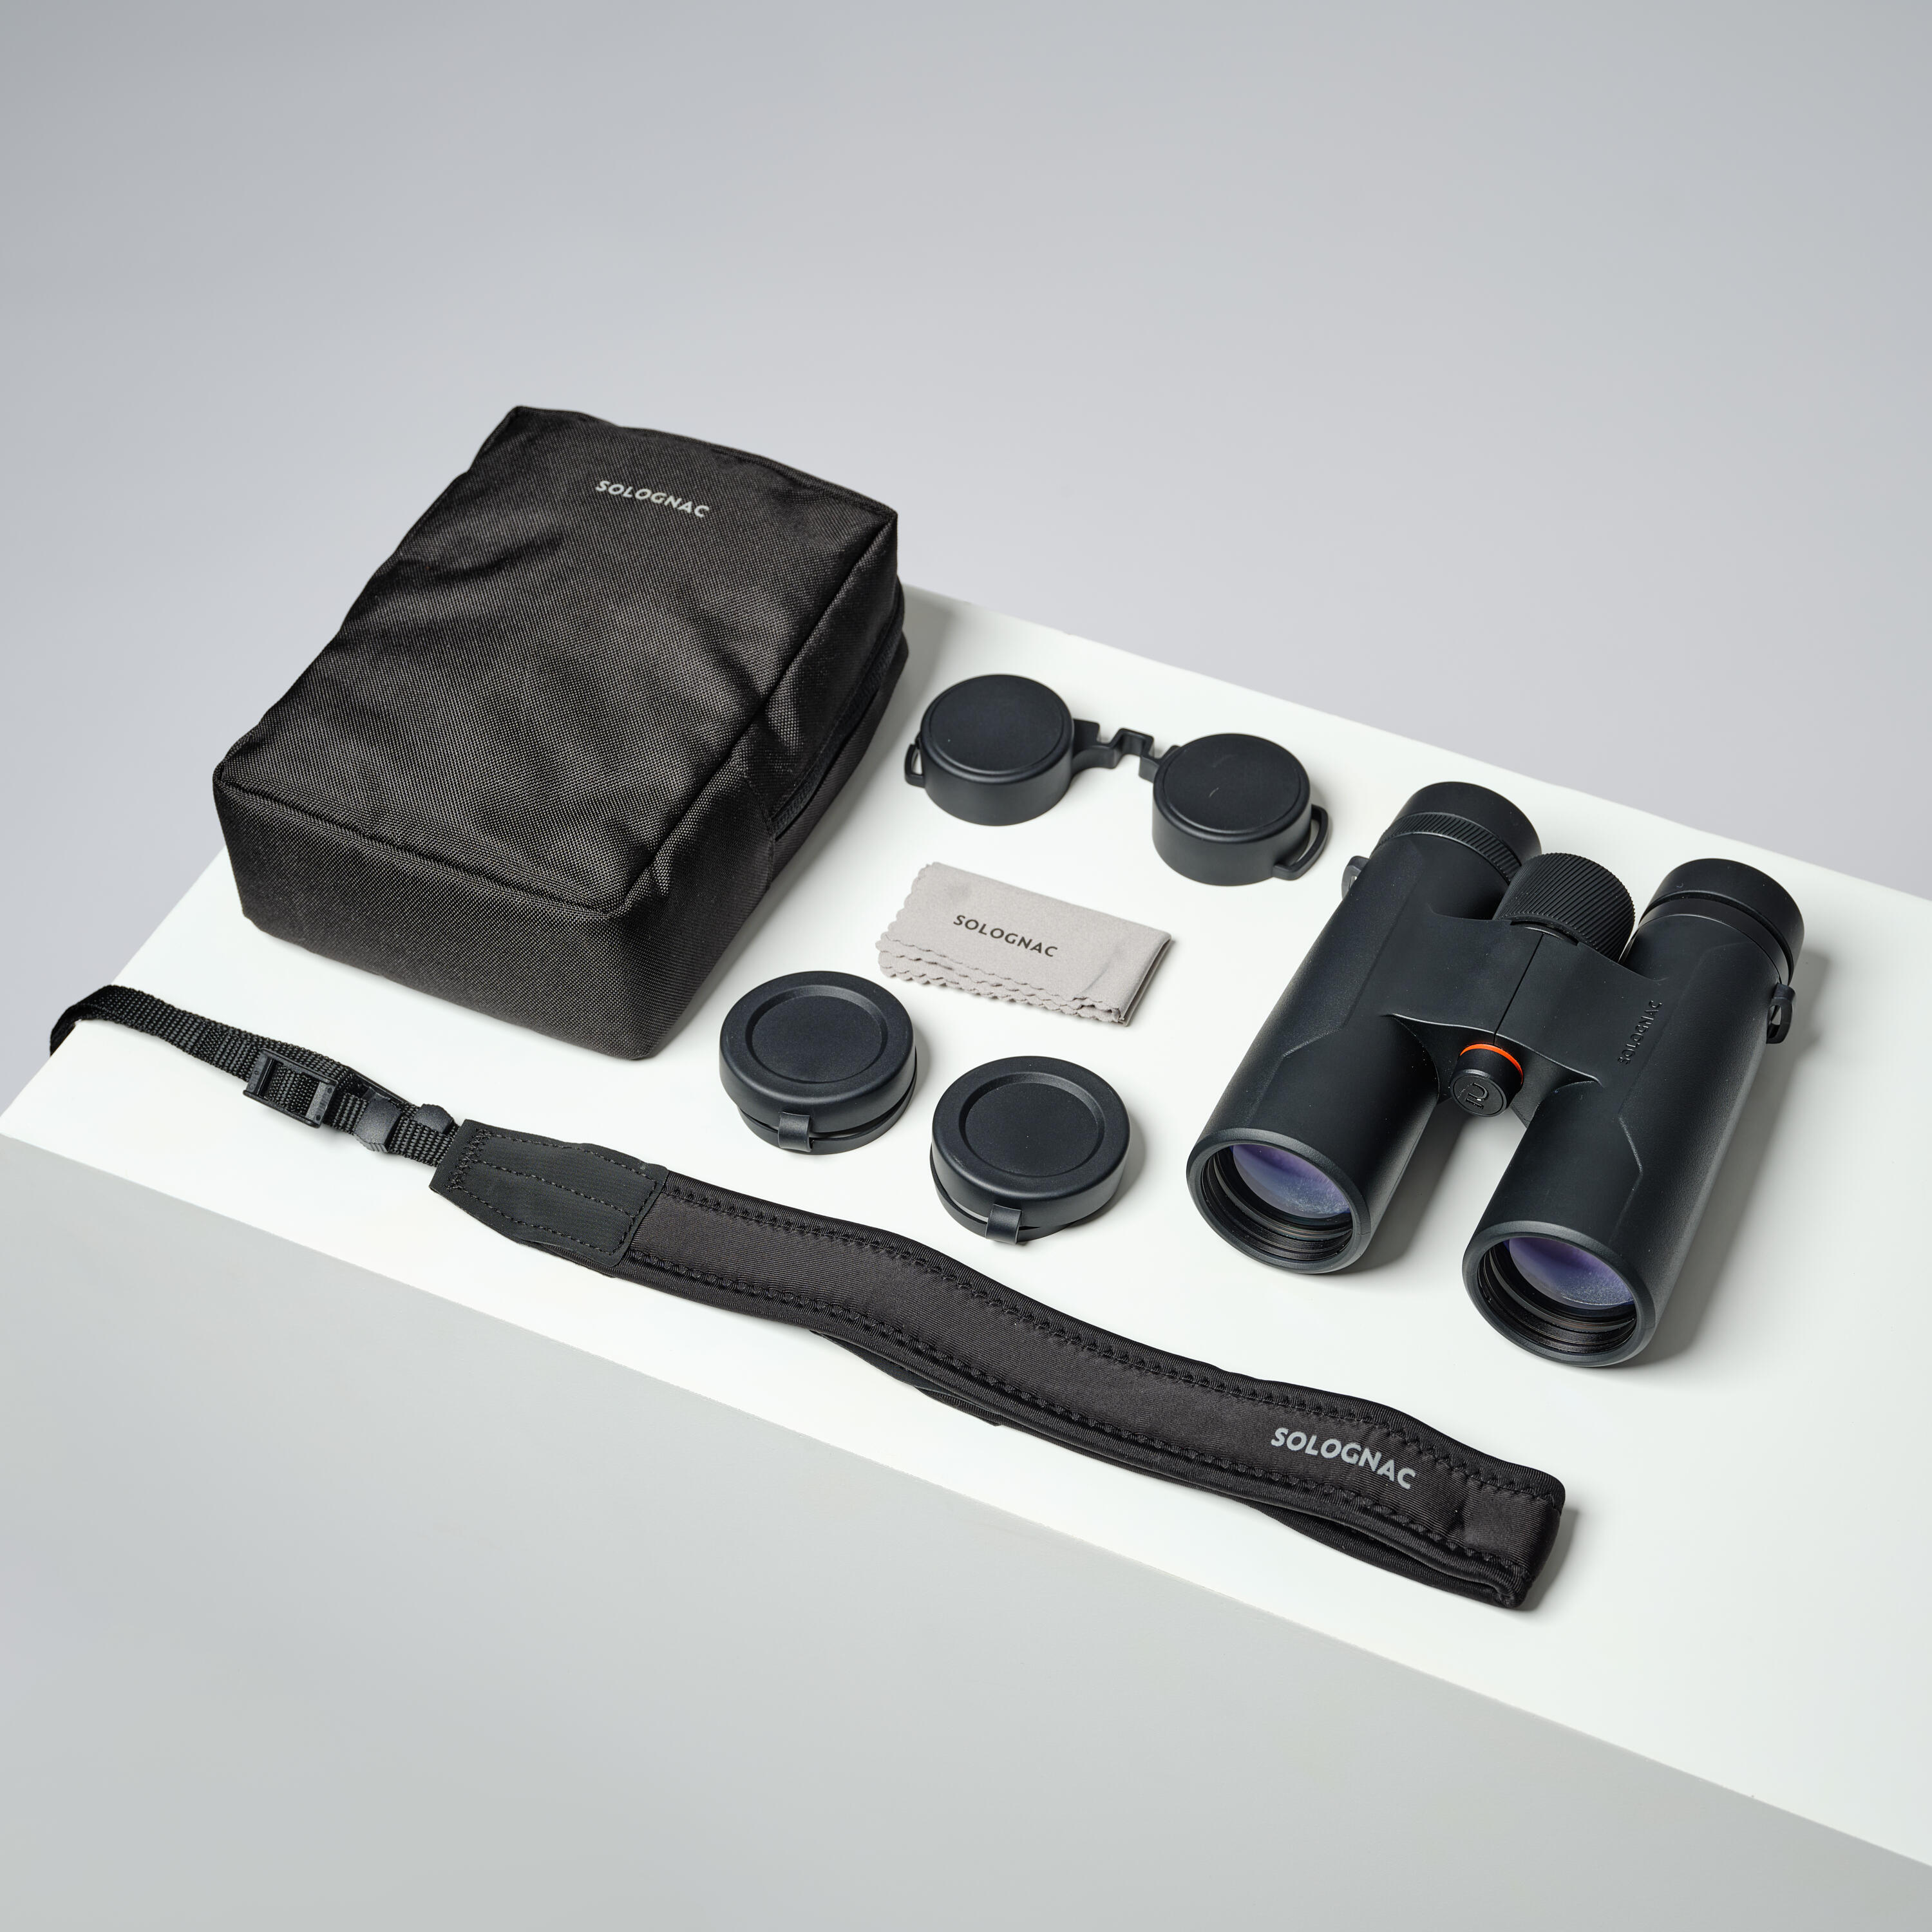 Waterproof hunting binoculars 100 10x42 - black 8/14